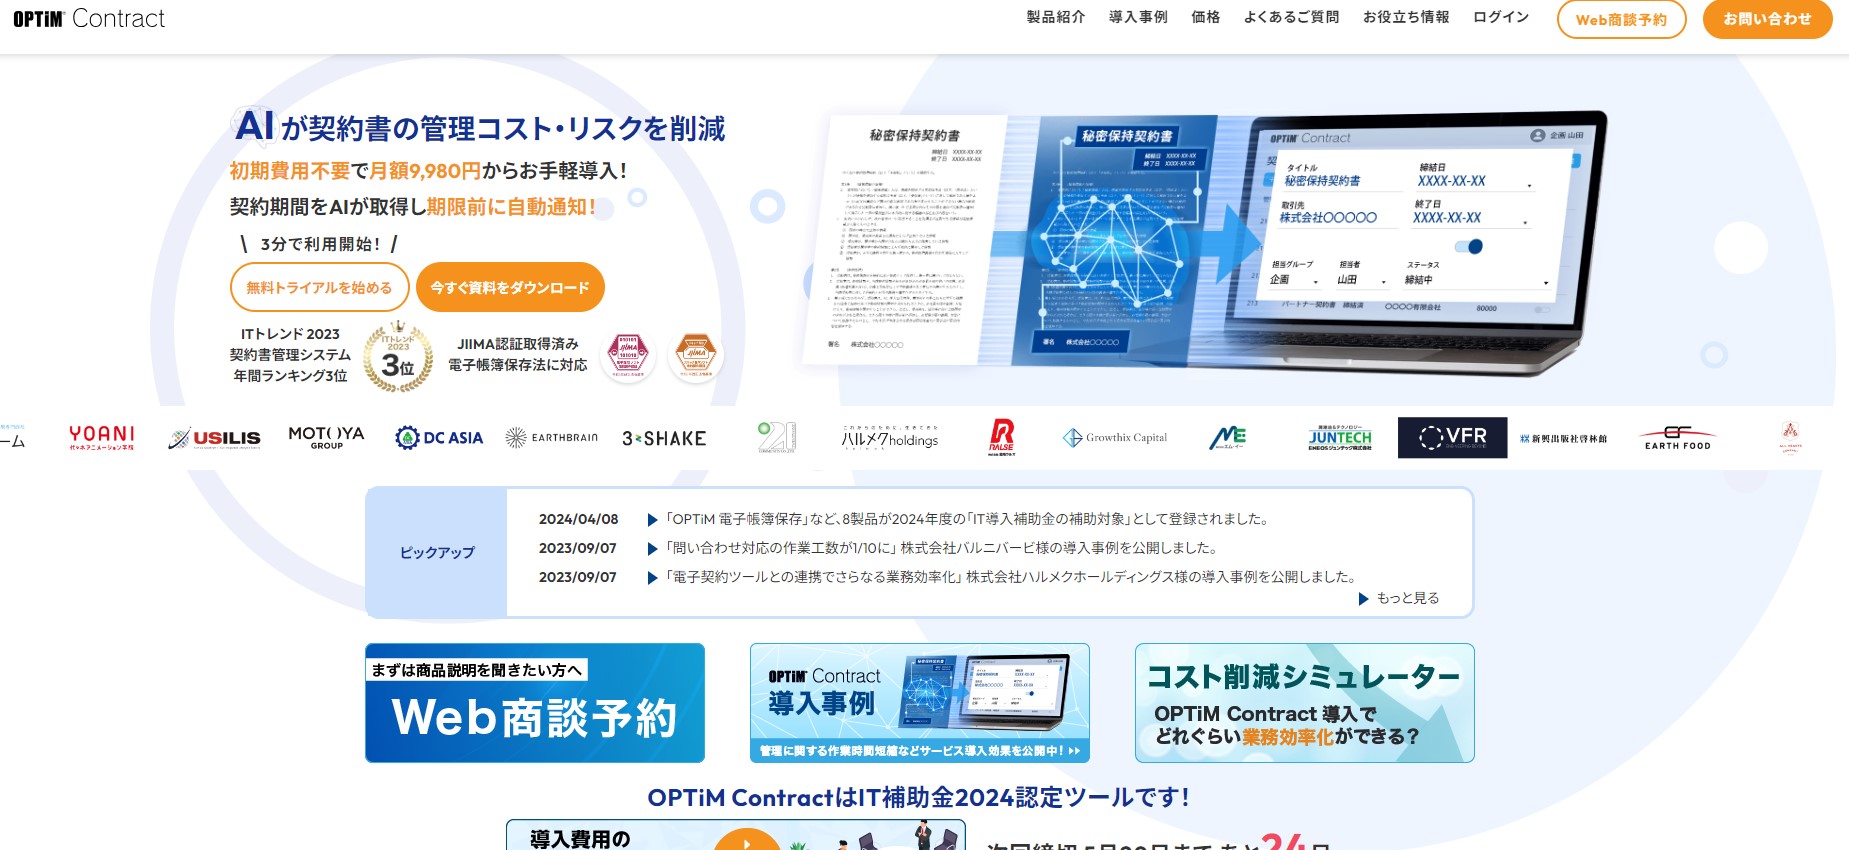 OPTiM Contract公式サイト